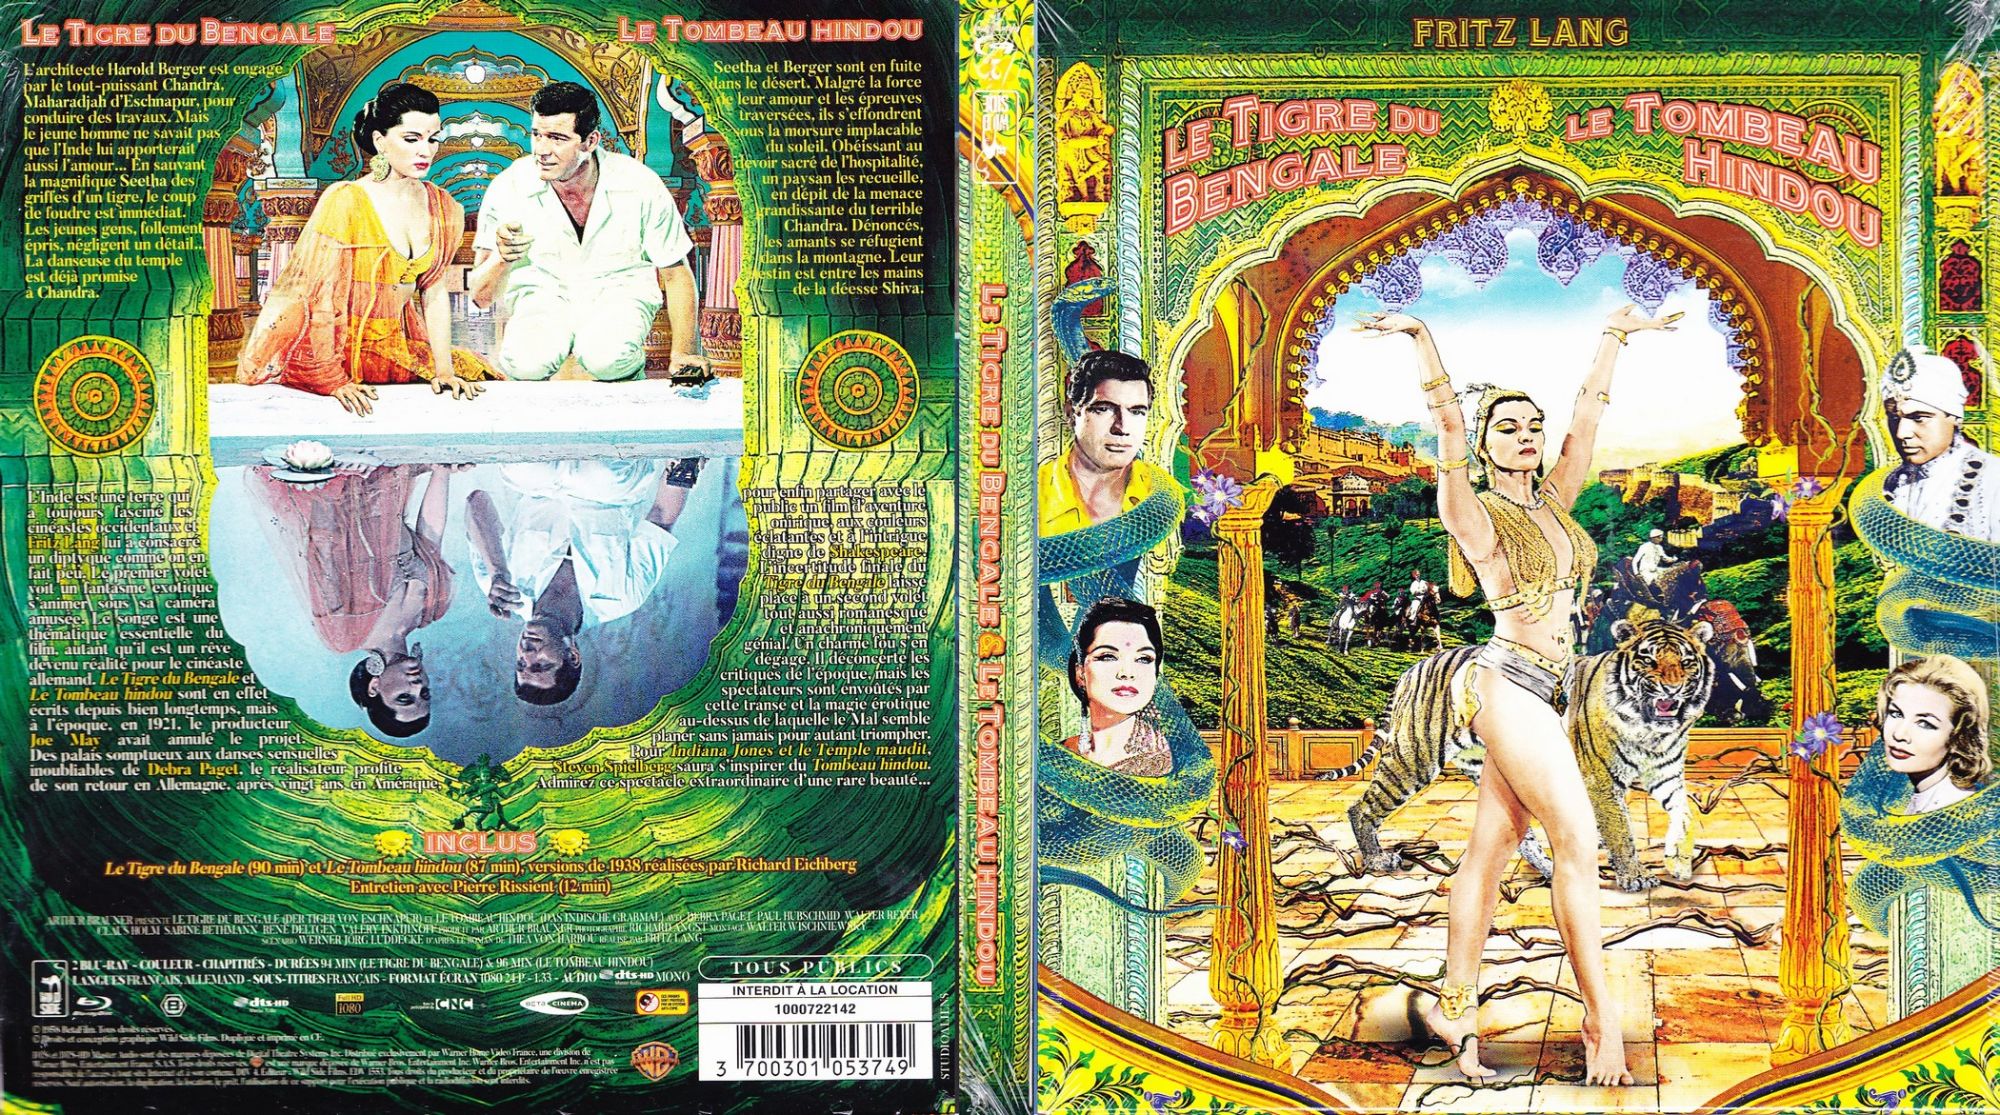 Jaquette DVD Le Tigre du Bengale - Le Tombeau Hindou (BLU-RAY)